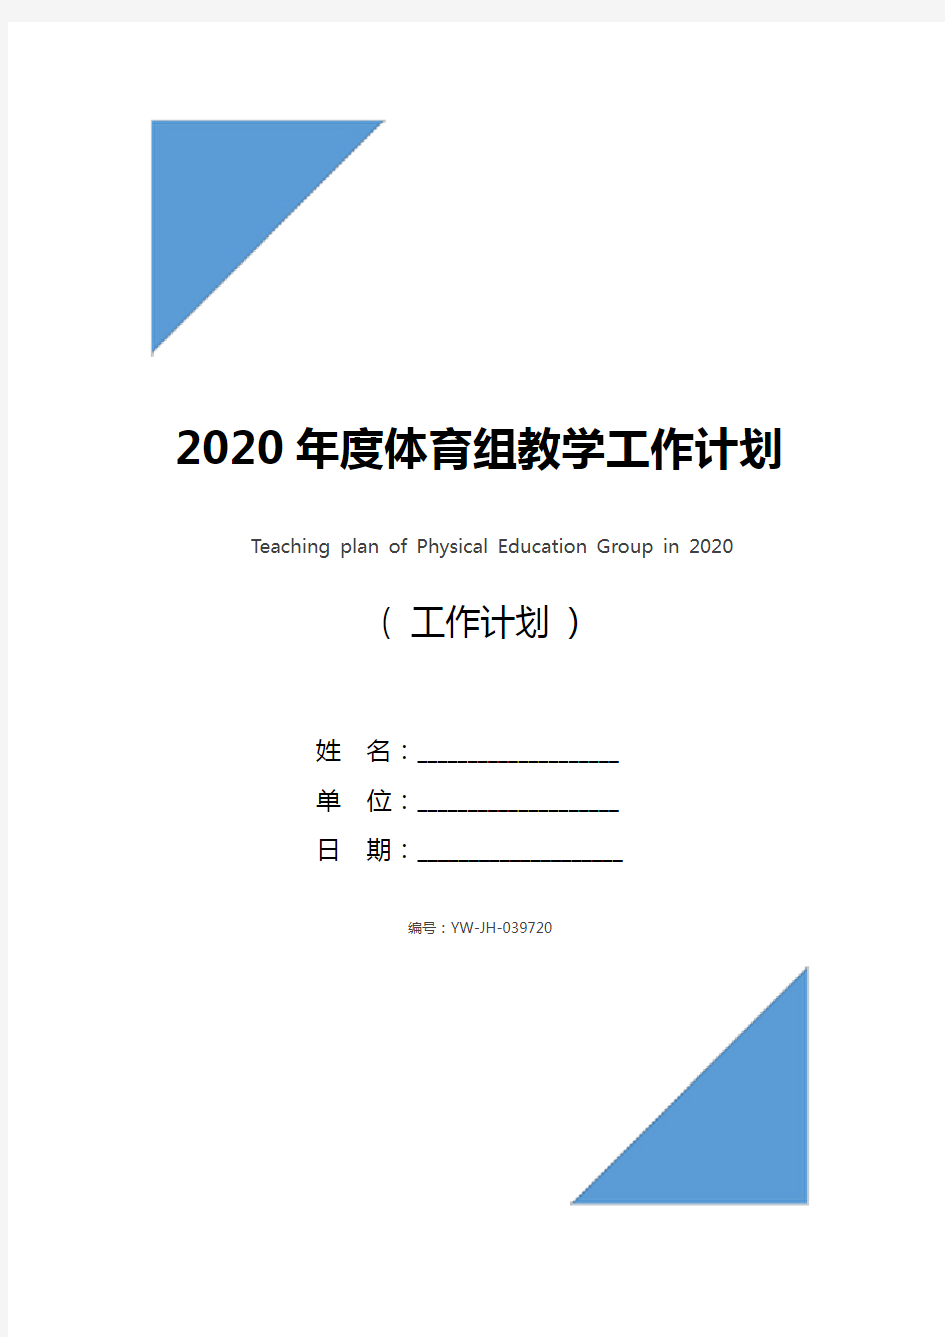 2020年度体育组教学工作计划